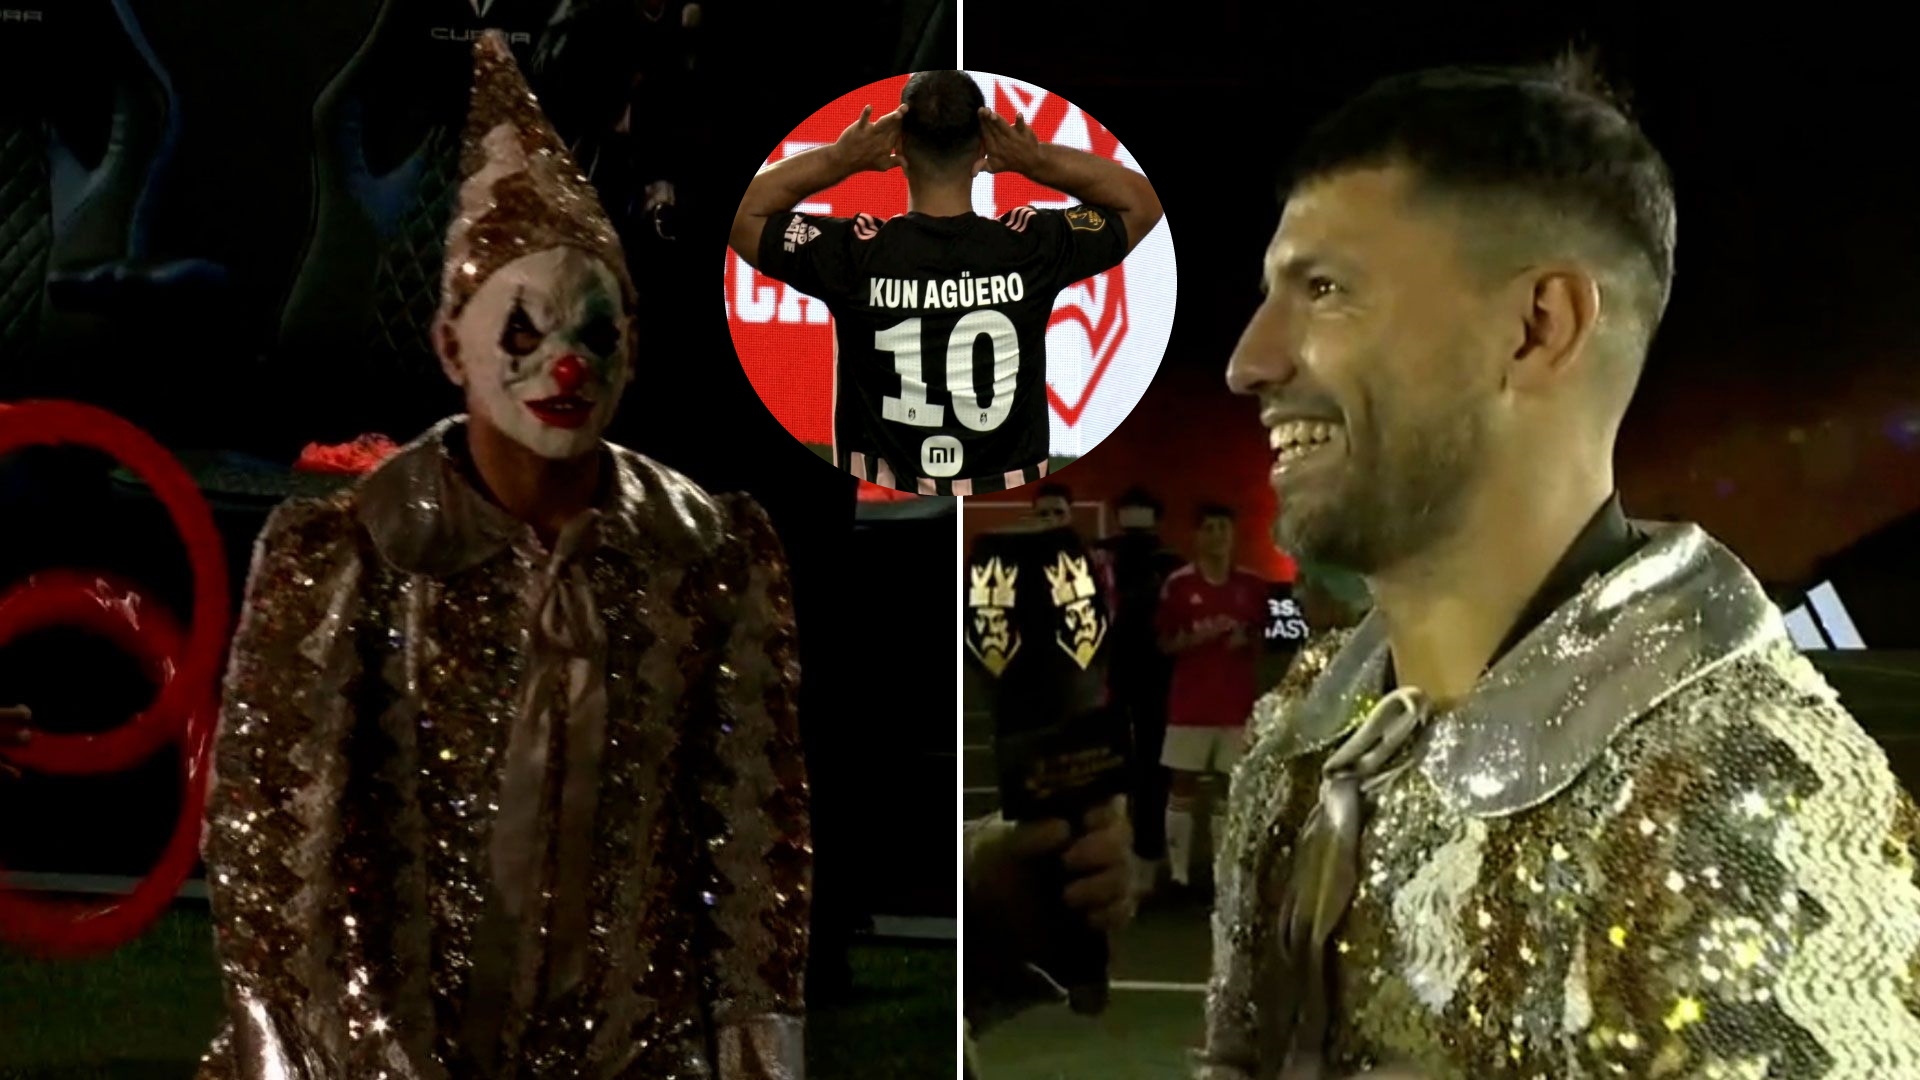 El show del Kun Agüero en su vuelta a las canchas por la Kings League: el “Joker”, un golazo y Topo Gigio dedicado a Ibai Llanos